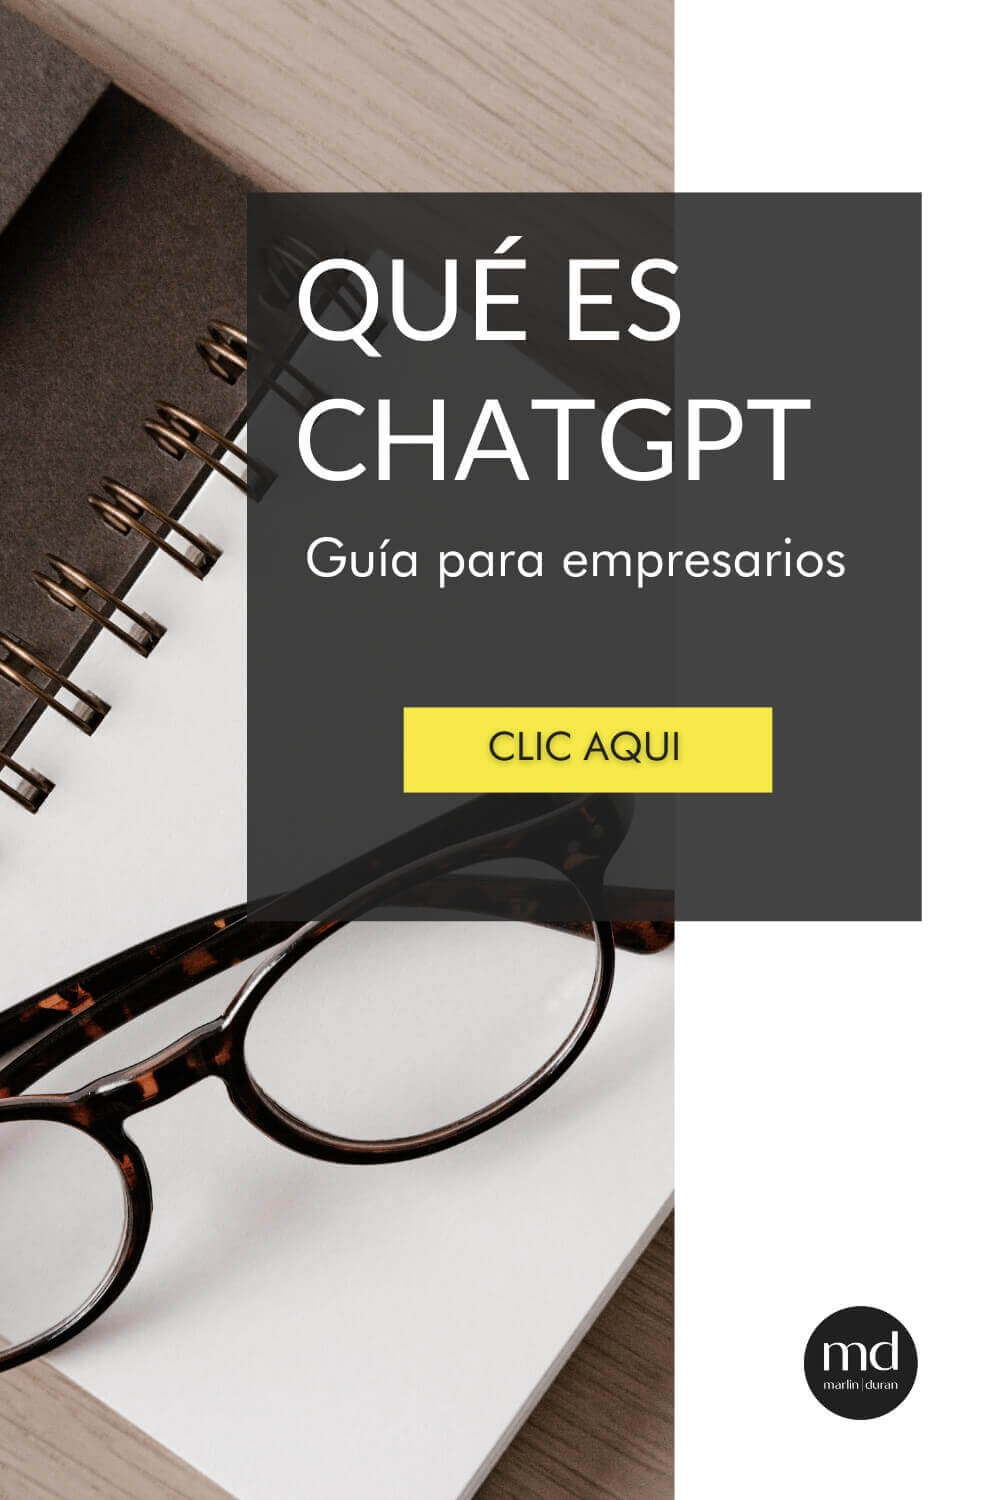 Portada de una guía para empresarios con el título 'QUÉ ES CHATGPT', acompañado de un botón que invita a hacer clic y gafas sobre una libreta, sugiriendo estudio y aprendizaje